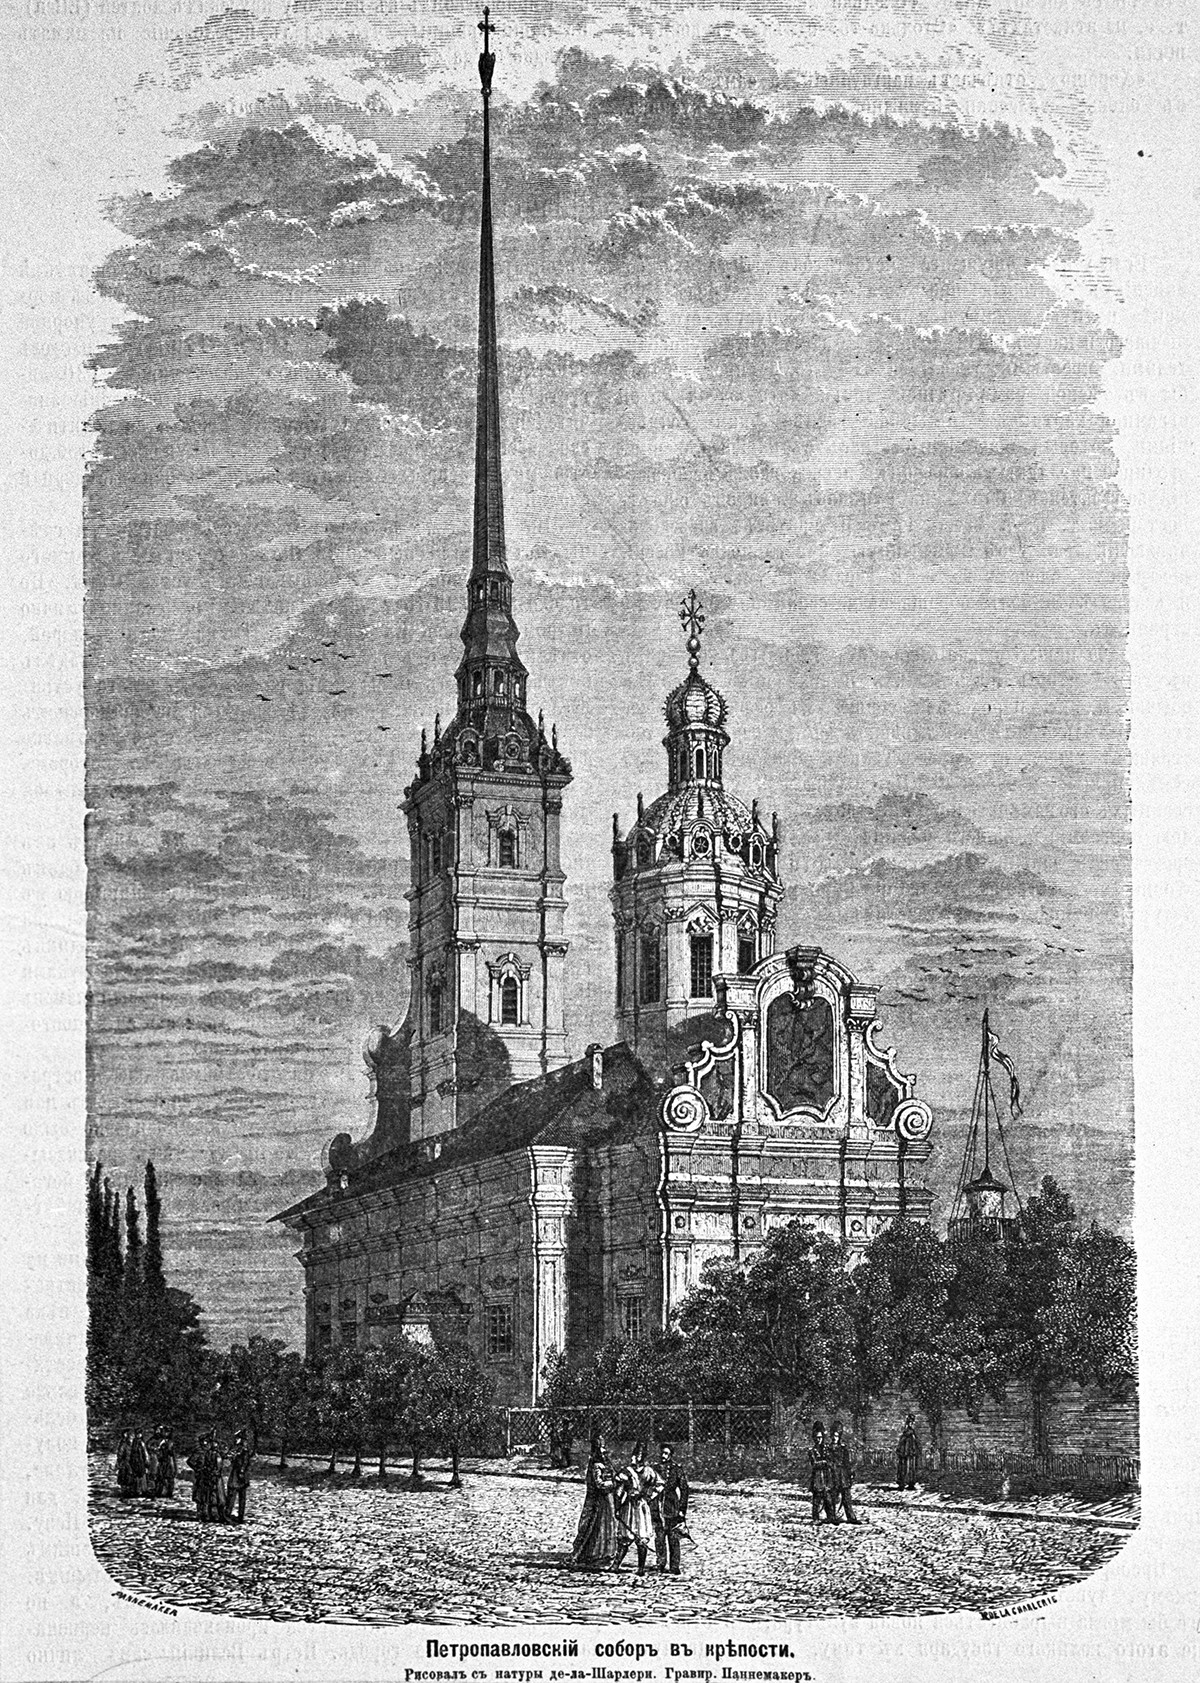 La Cattedrale di Pietro e Paolo, nella fortezza di Pietro e Paolo, necropoli degli imperatori russi. Incisione del XIX secolo